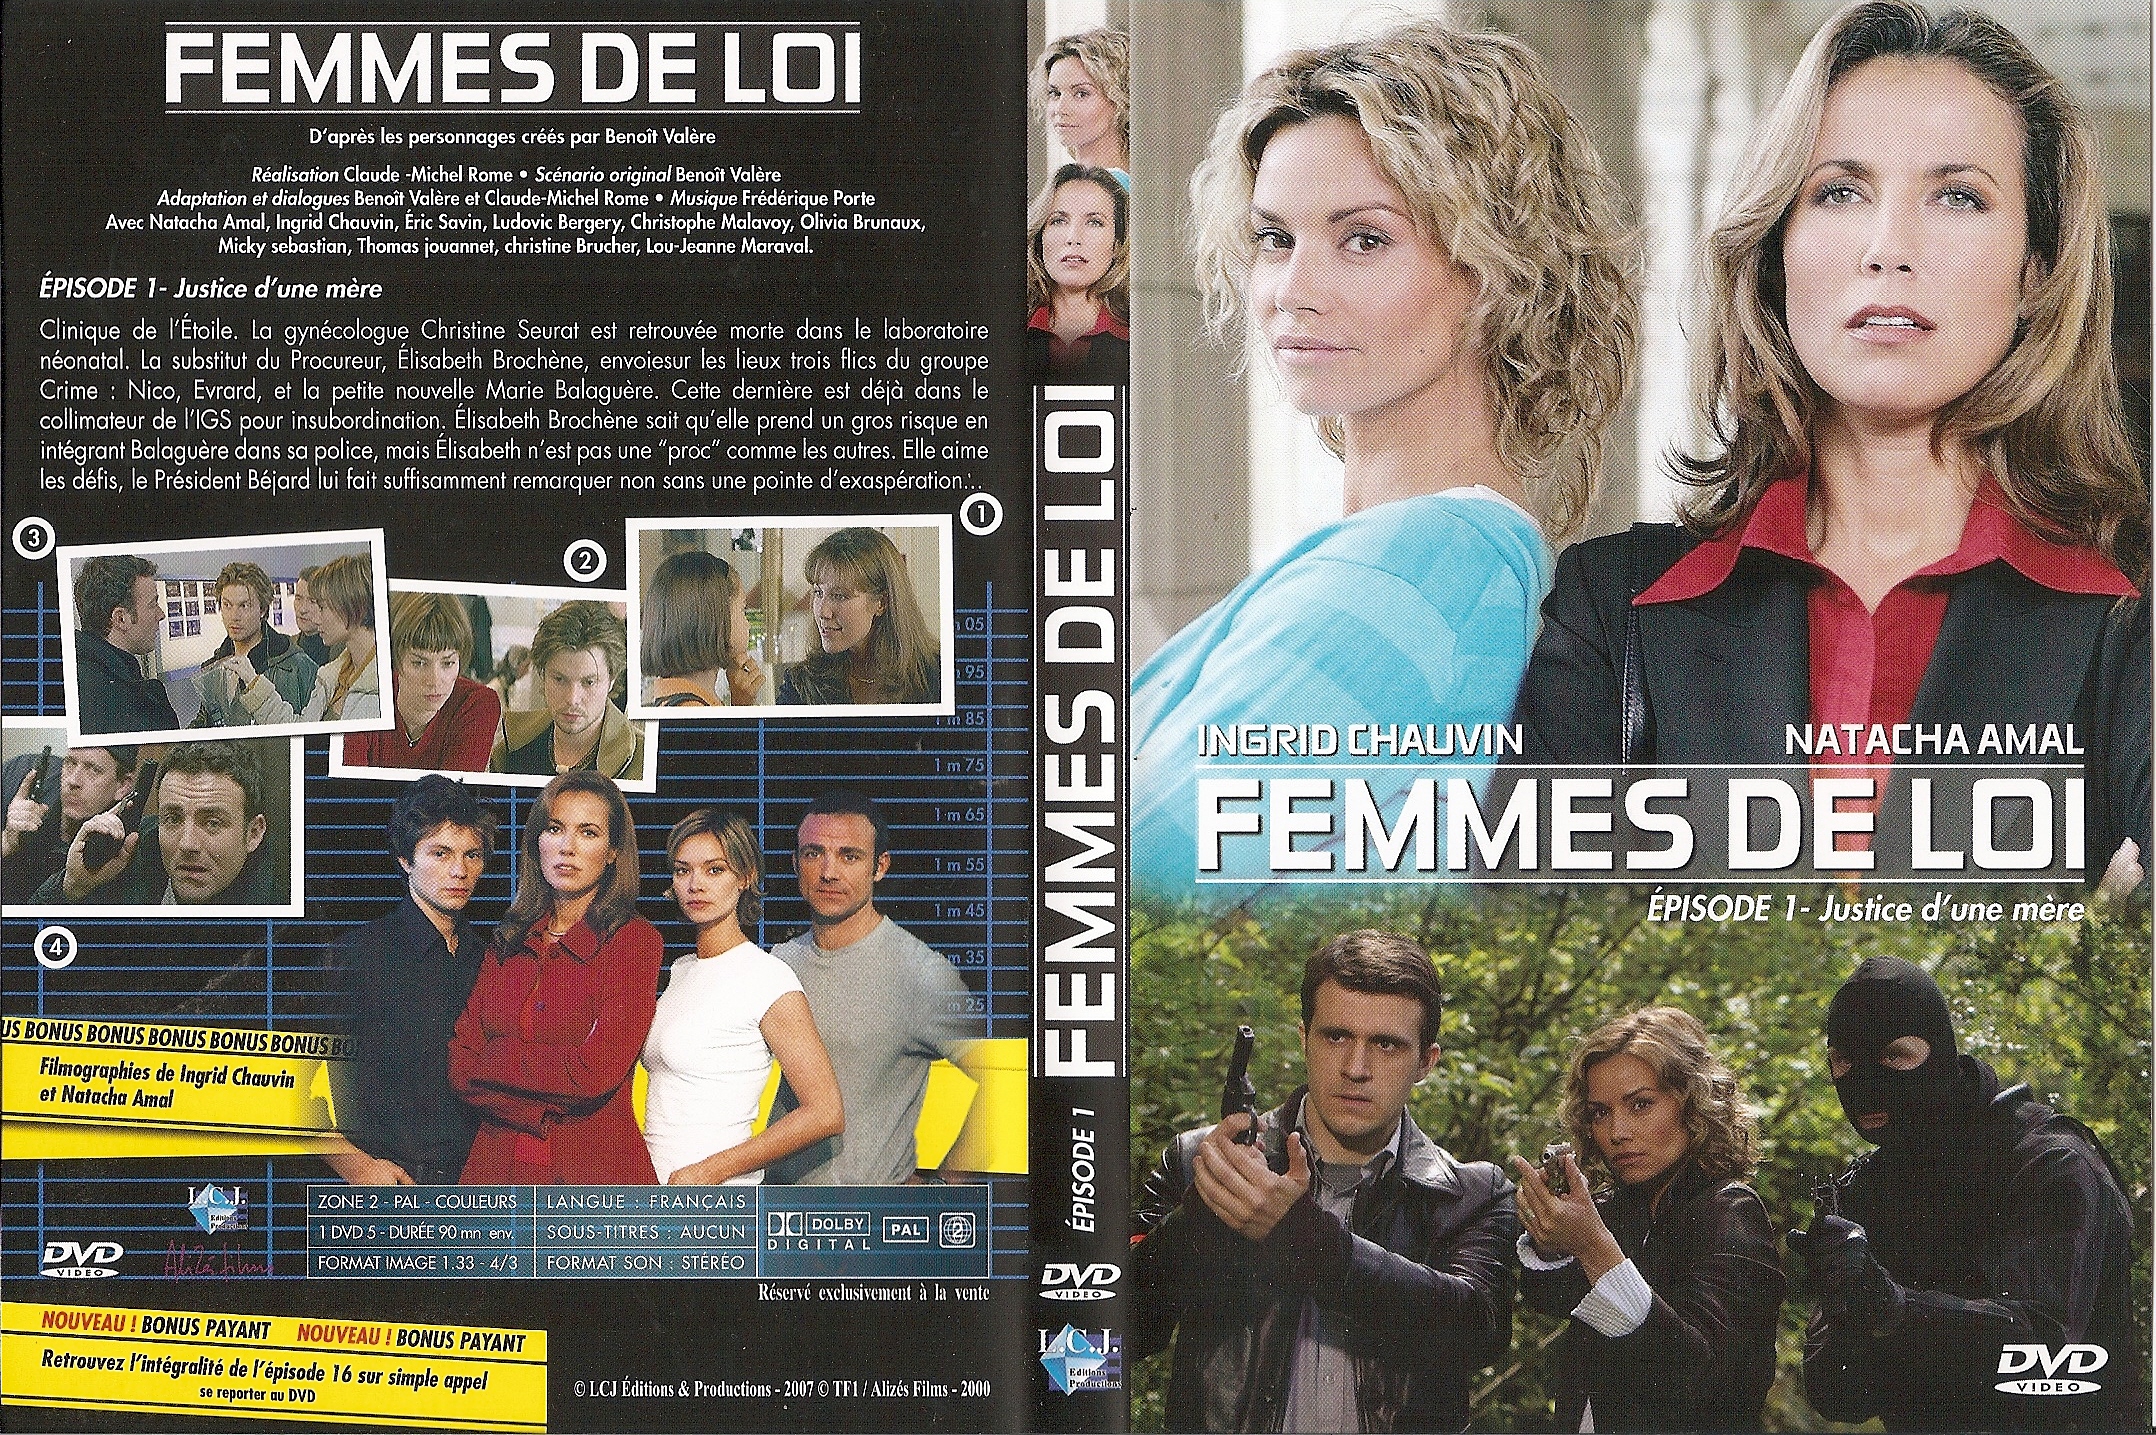 Jaquette DVD Femmes de loi  pisode 1